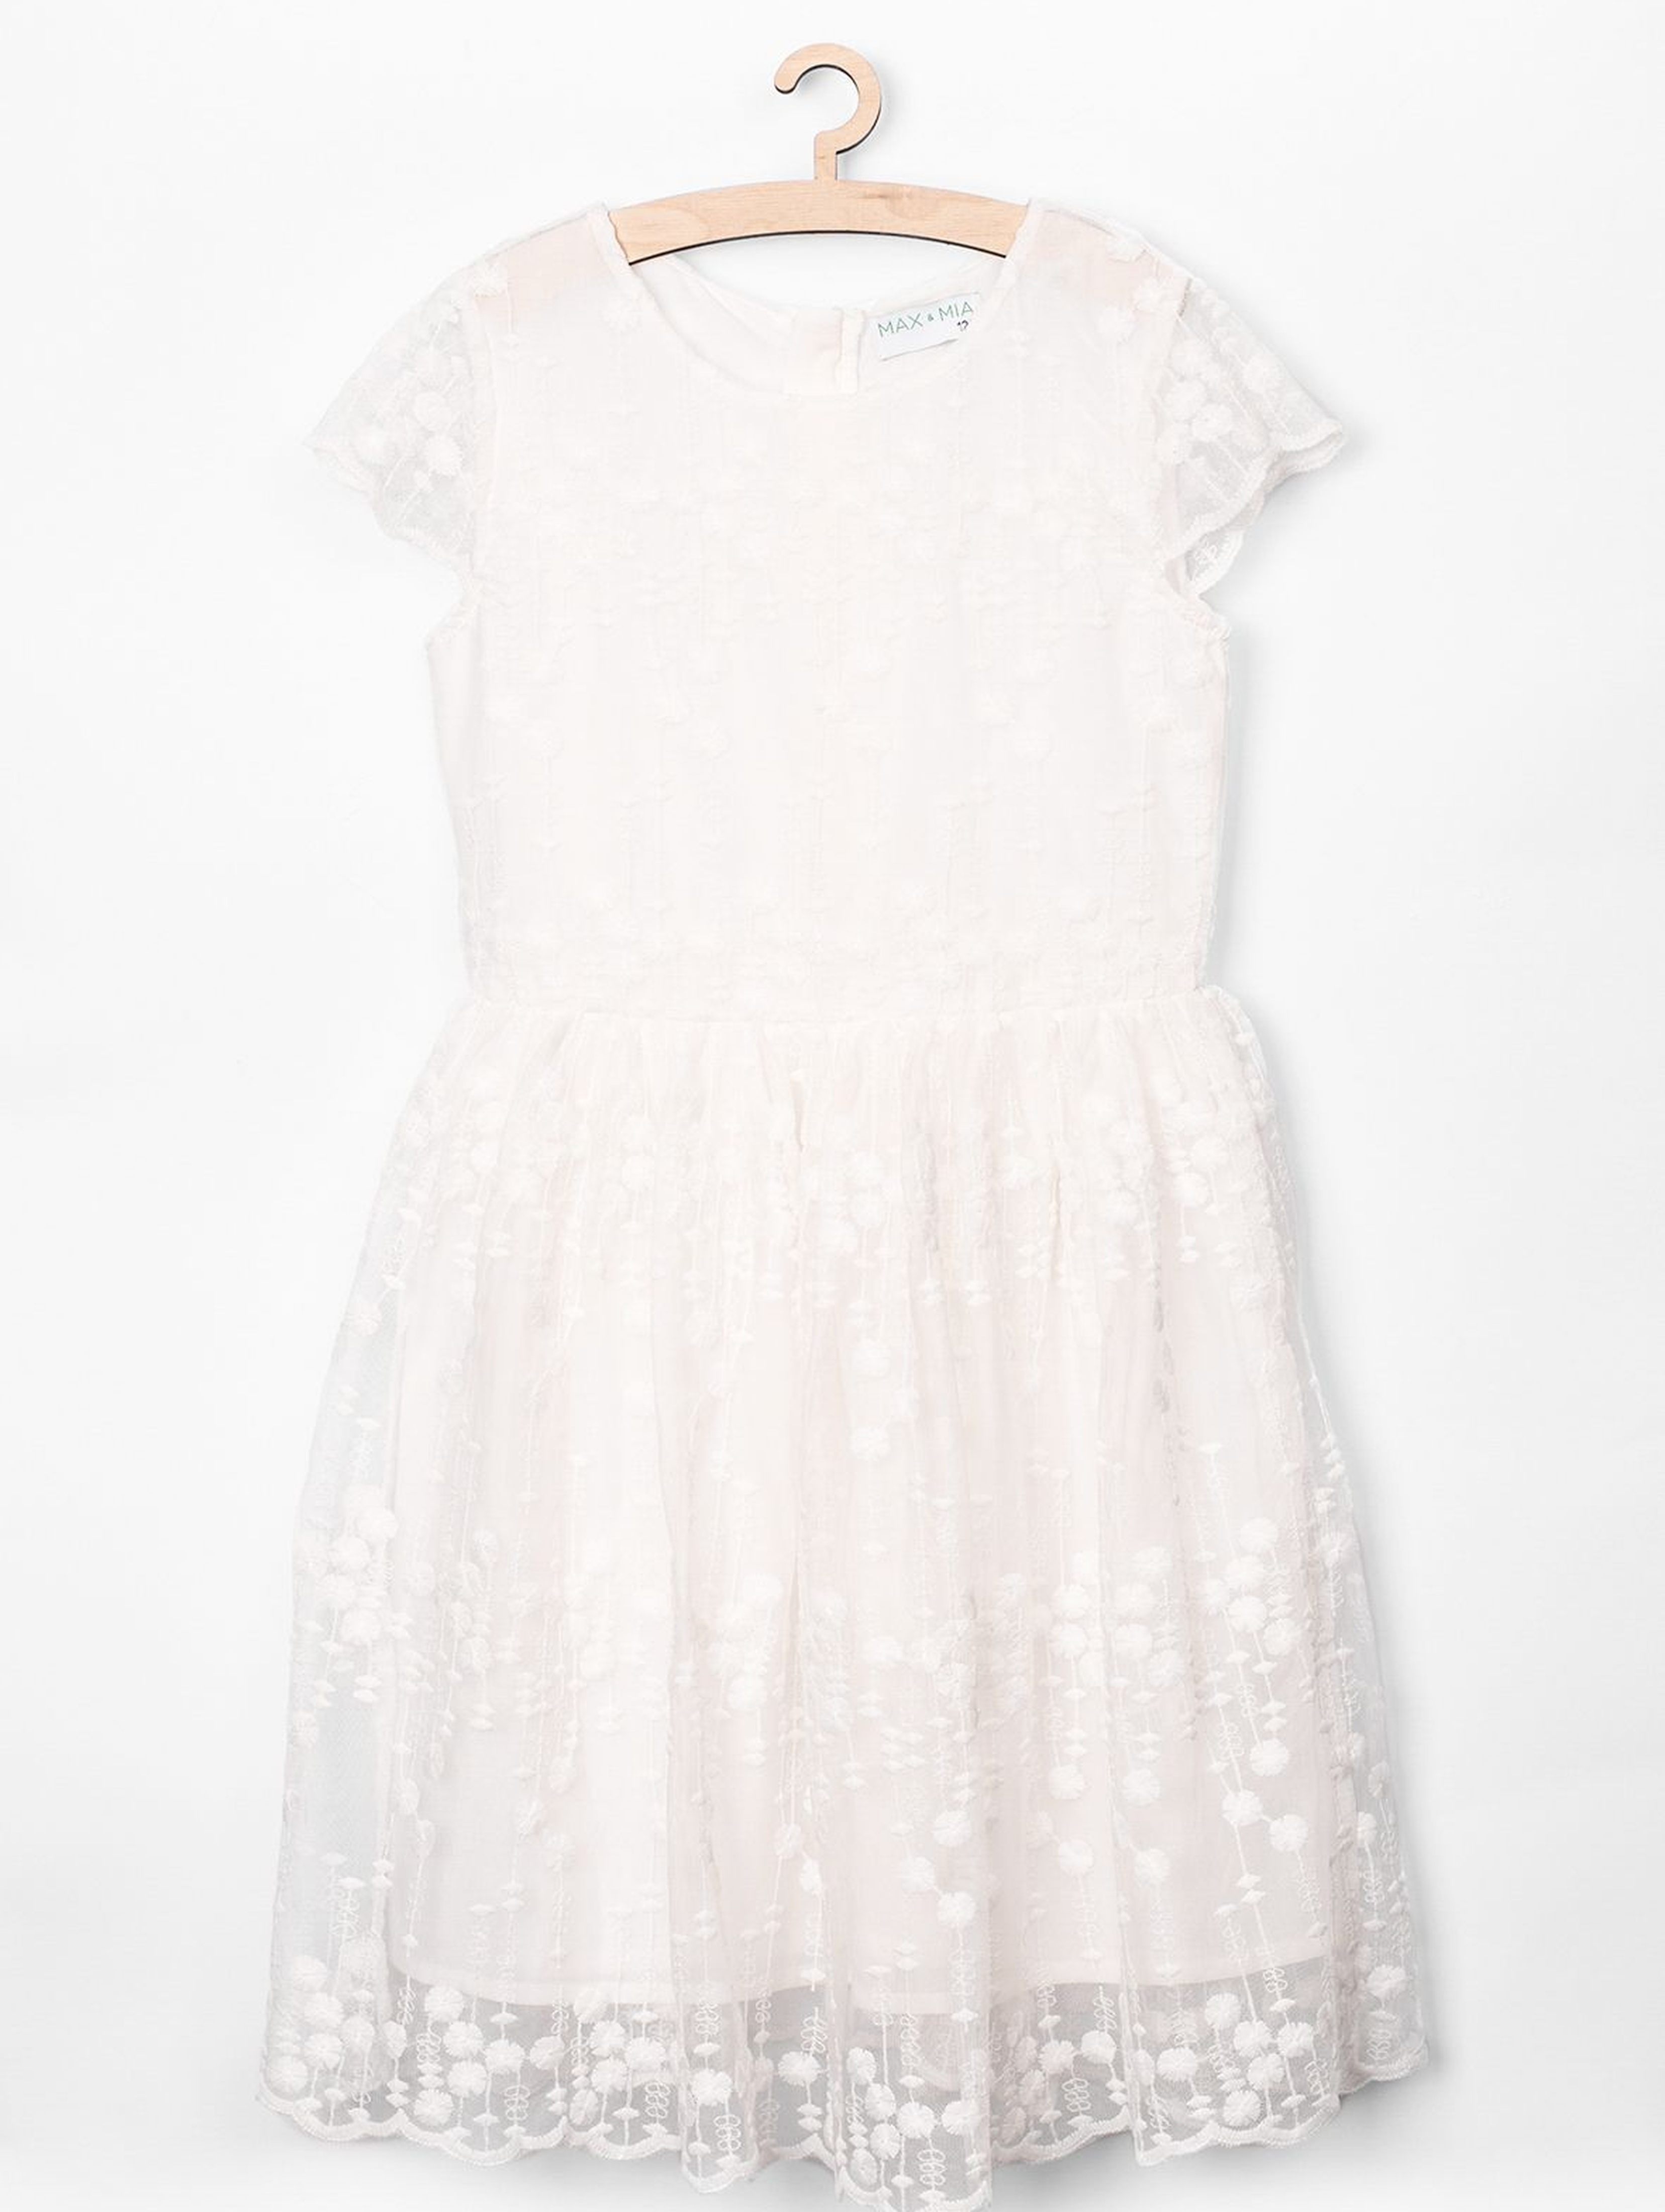 Elegancka sukienka dla dziewczynki- biała